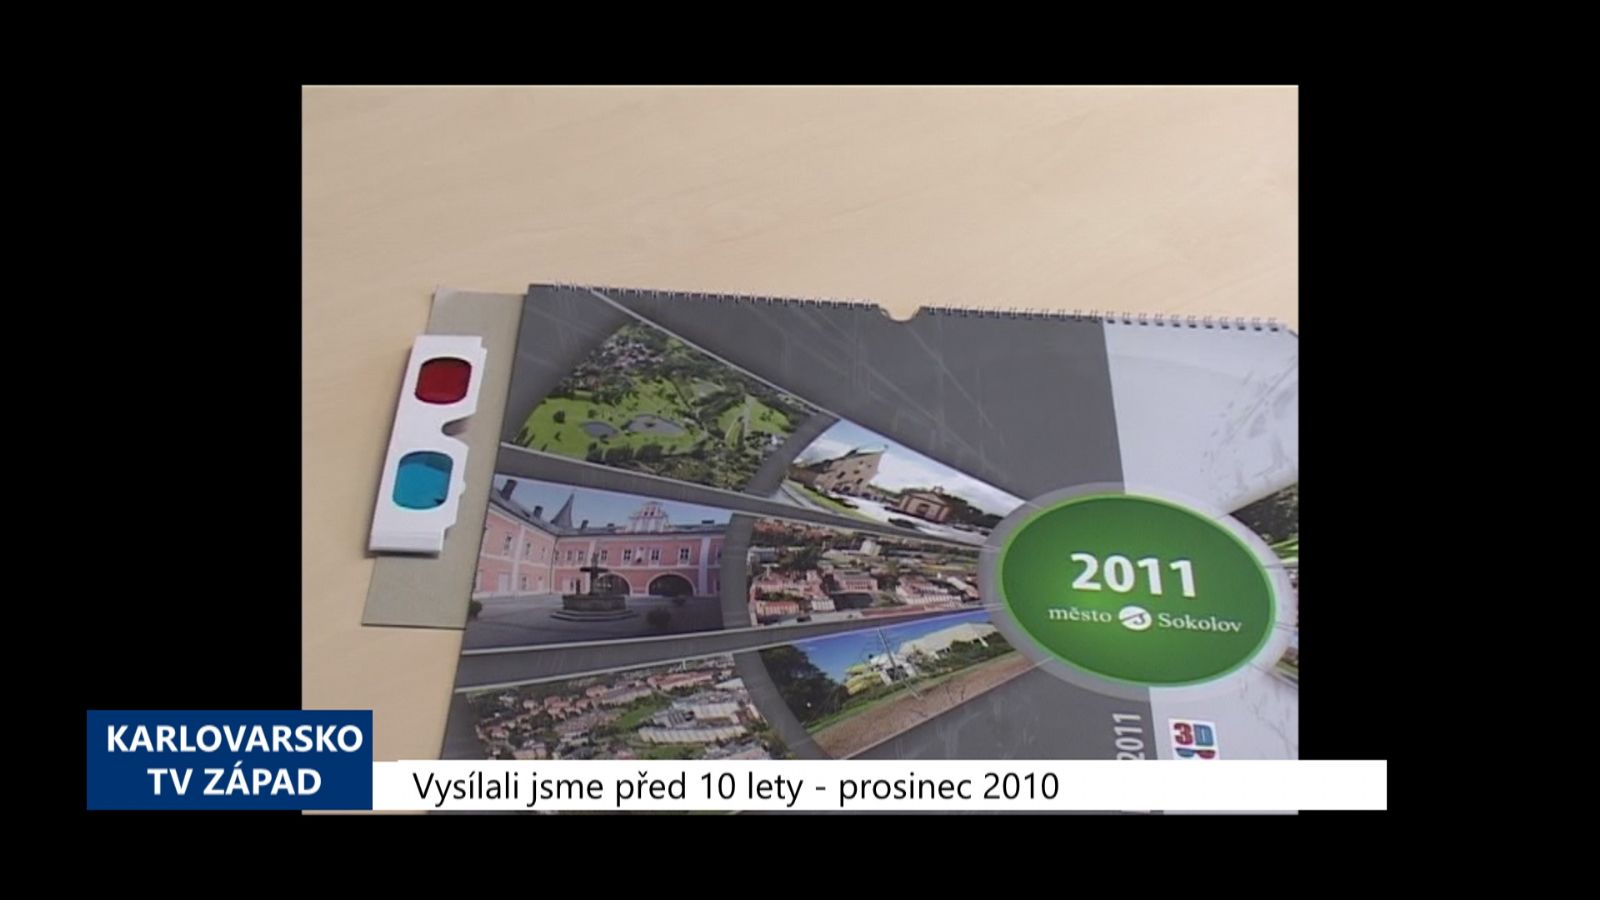 2010 – Sokolov: Nový kalendář je ve 3D (4250) (TV Západ)